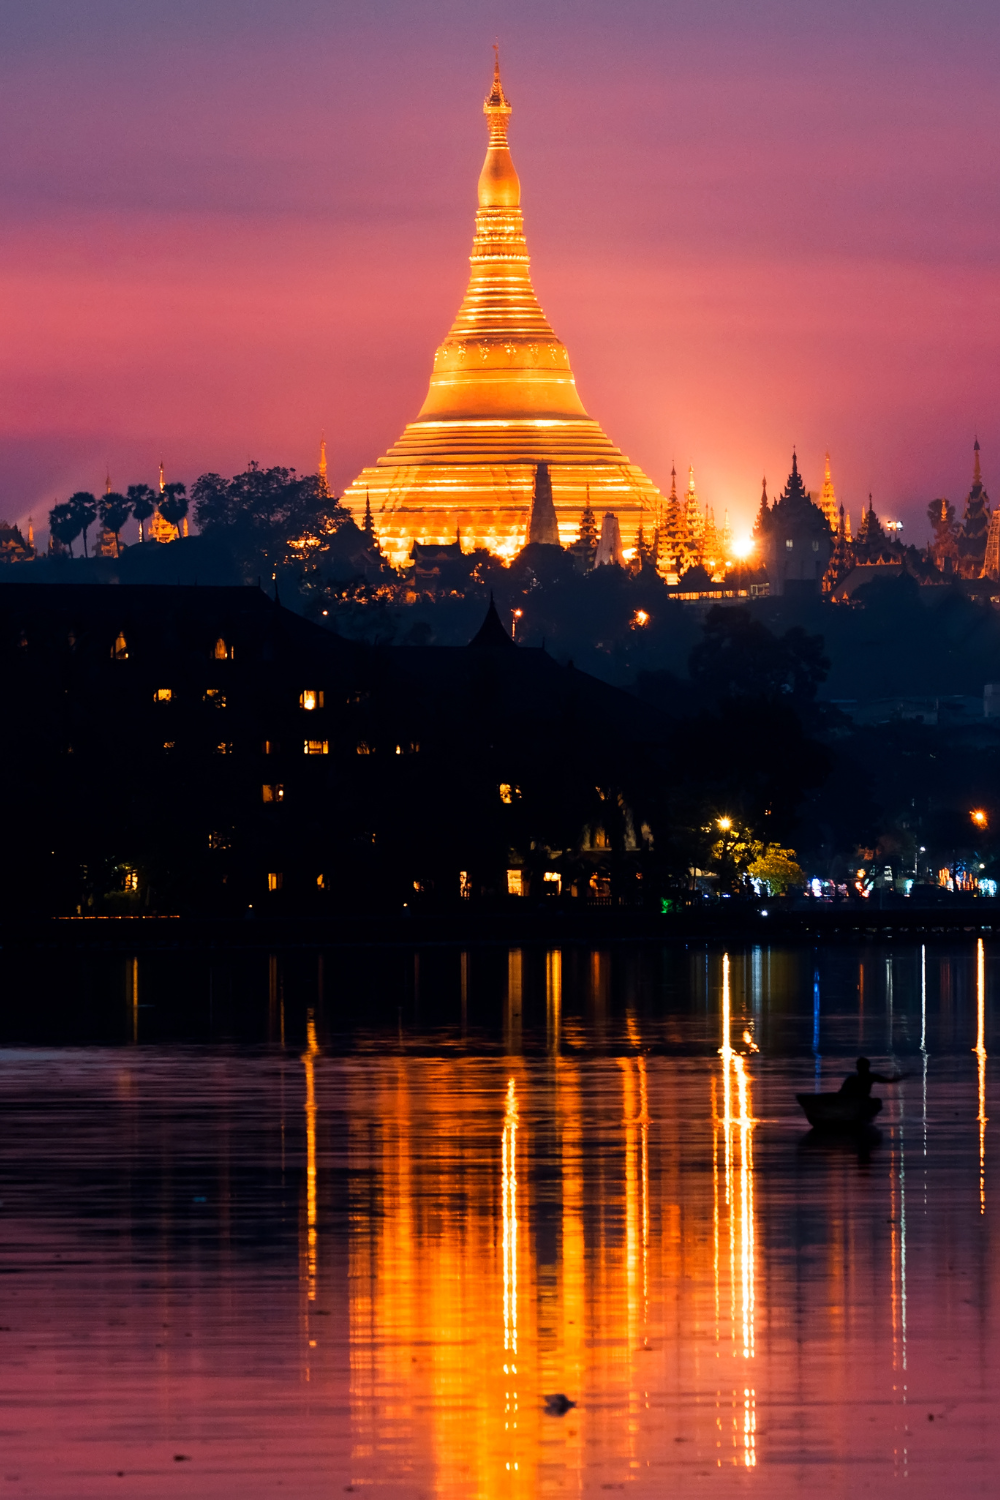 Temple at night lit up in Yangon, Myanmar